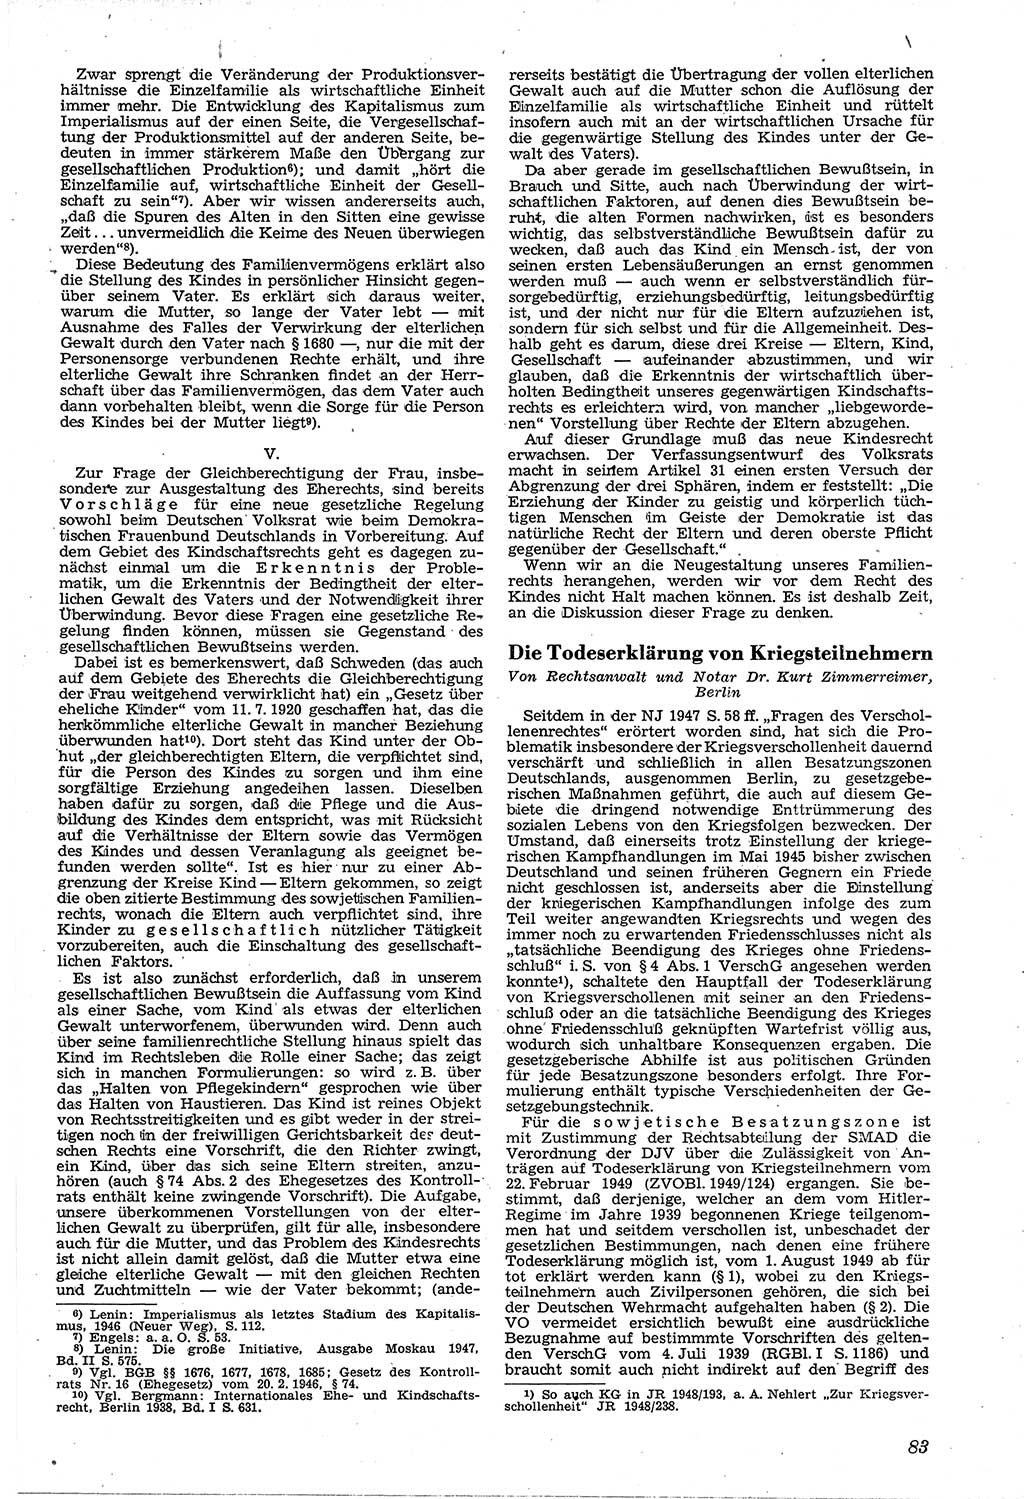 Neue Justiz (NJ), Zeitschrift für Recht und Rechtswissenschaft [Sowjetische Besatzungszone (SBZ) Deutschland, Deutsche Demokratische Republik (DDR)], 3. Jahrgang 1949, Seite 83 (NJ SBZ Dtl. DDR 1949, S. 83)